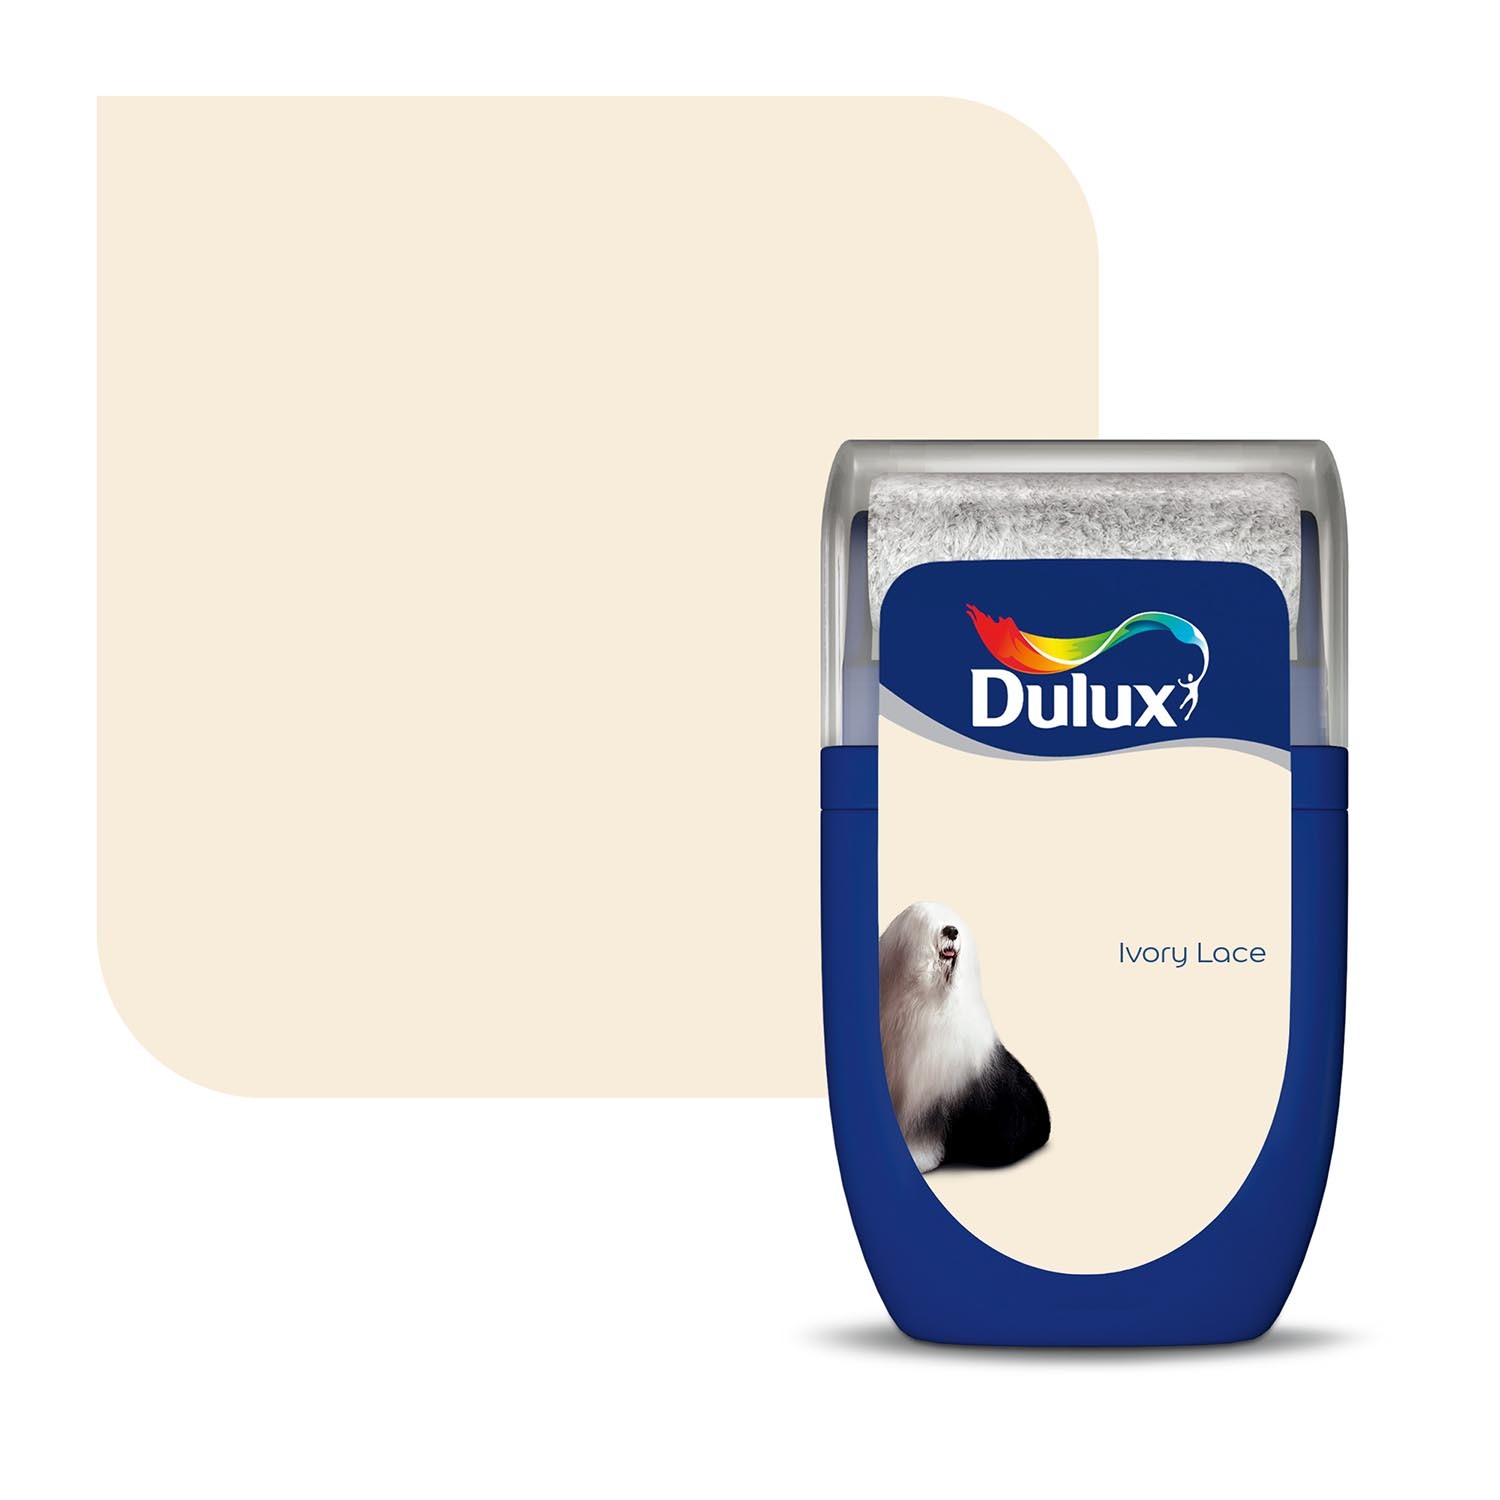 Dulux Ivory Lace Matt Emulsion Paint Tester Pot 30ml Image 2